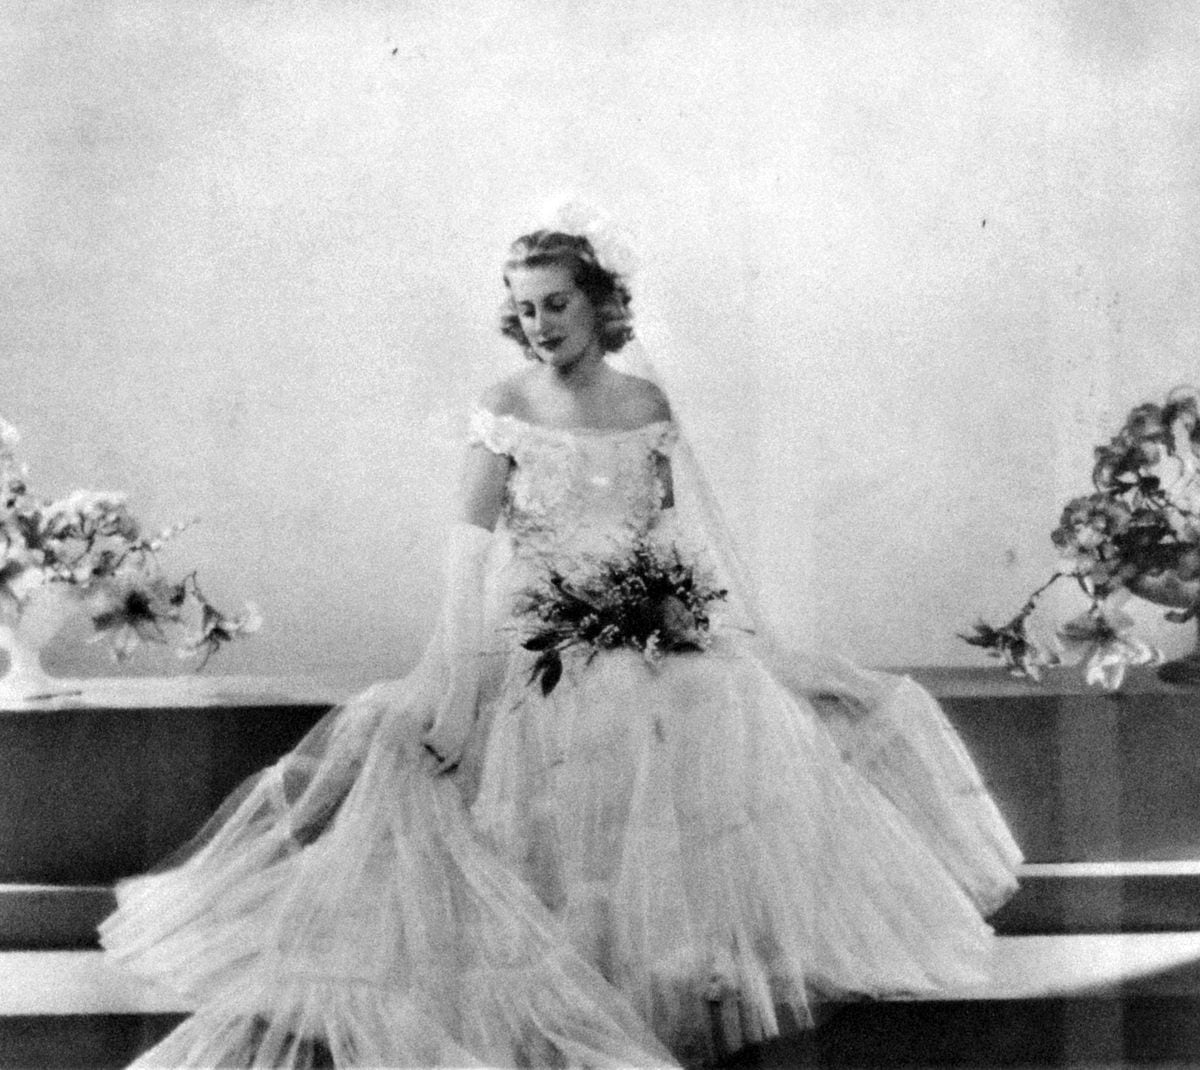 Pat as a debutante in 1938